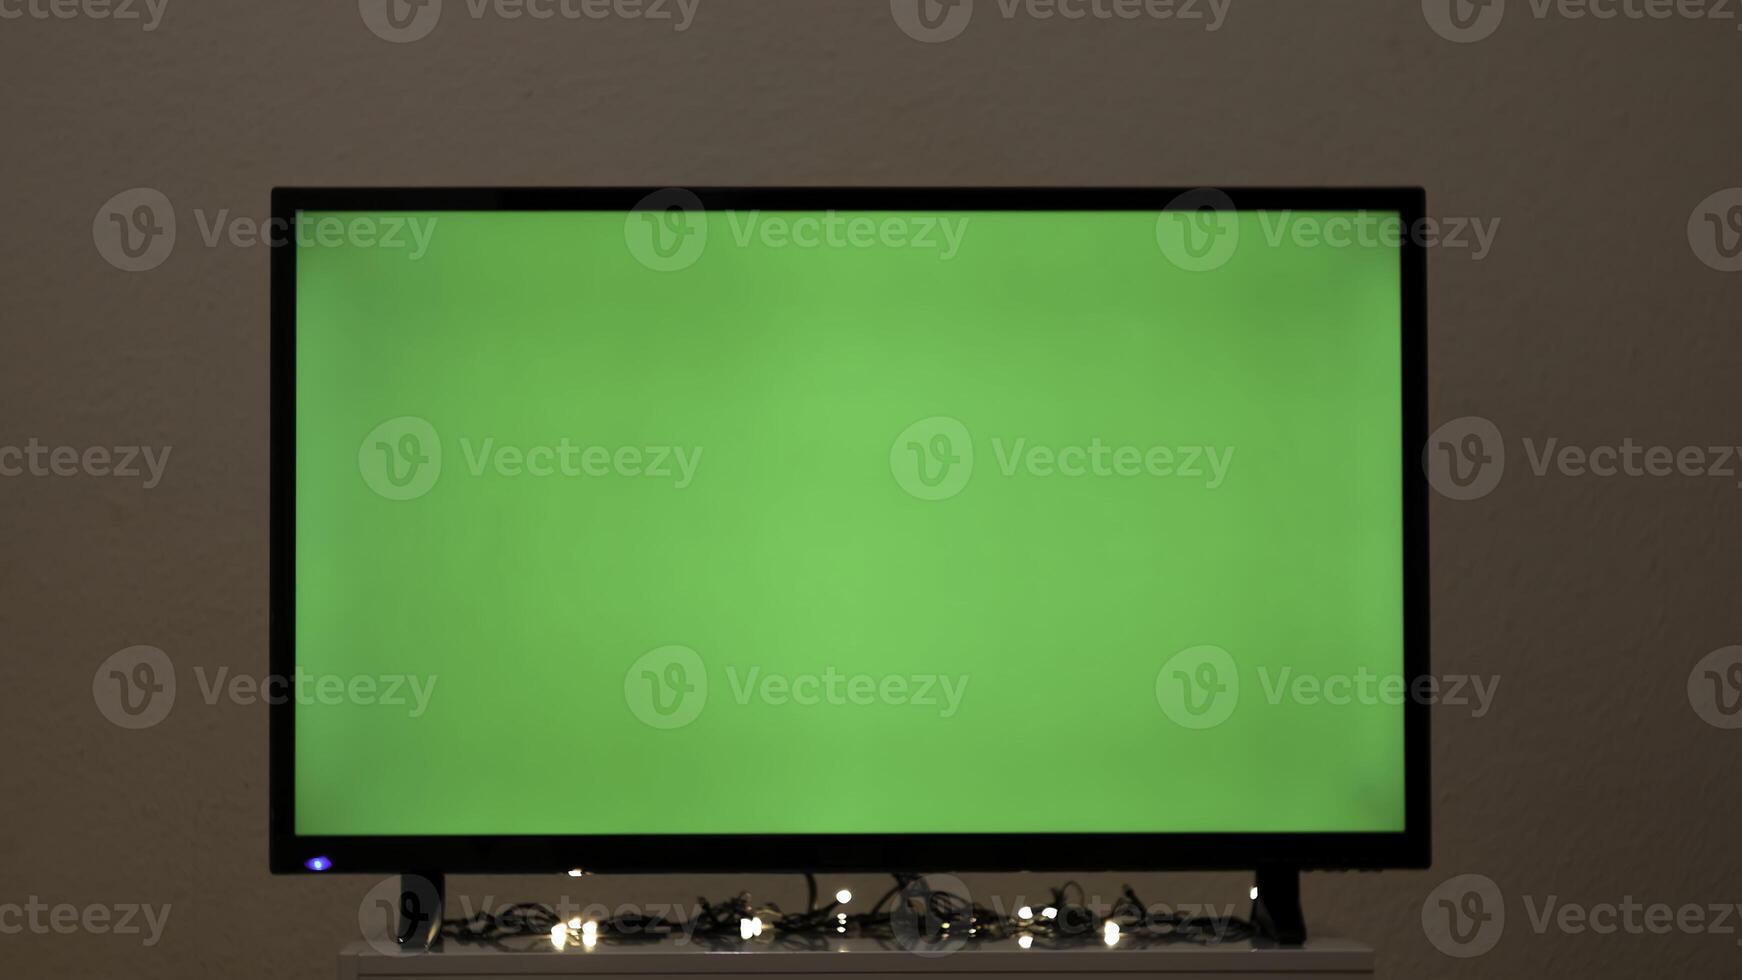 grön TV skärm med blinkande krans. begrepp. krans blinkar på bakgrund av grön TV i rum. grön skärm TV i tömma rum med festlig atmosfär foto